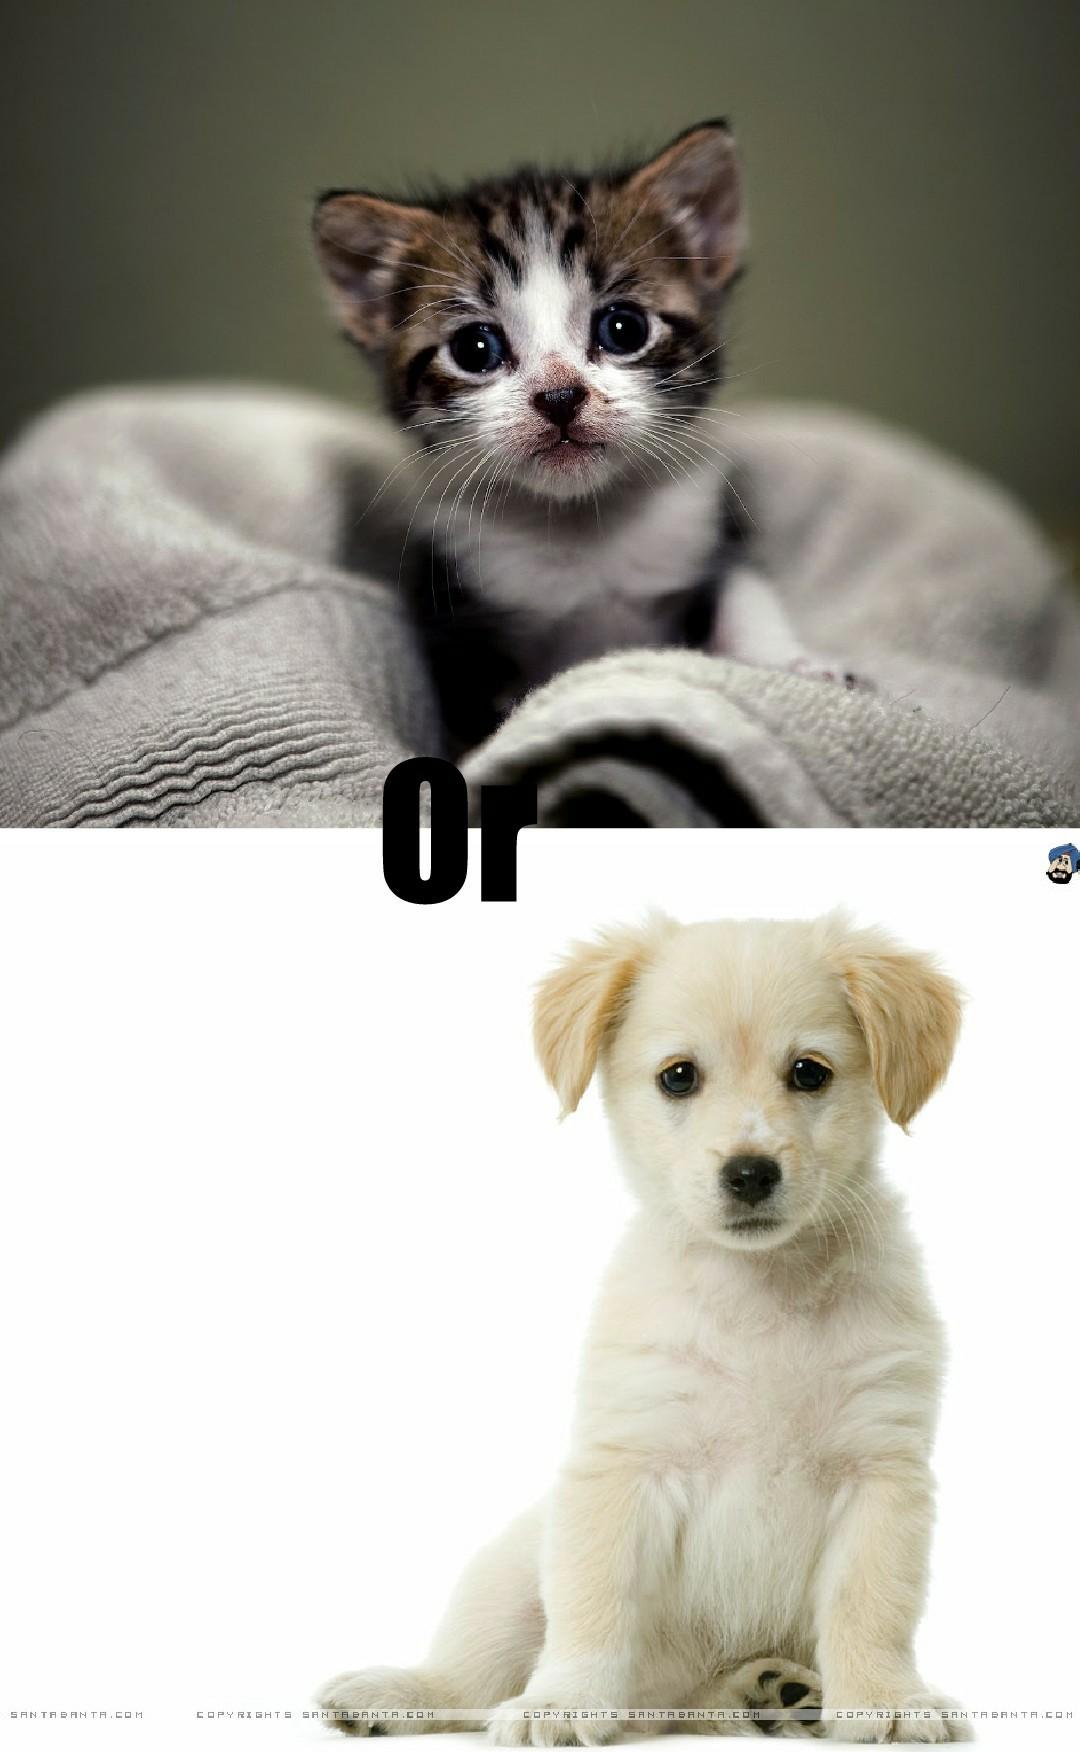 which one kitten or puppy😜❤